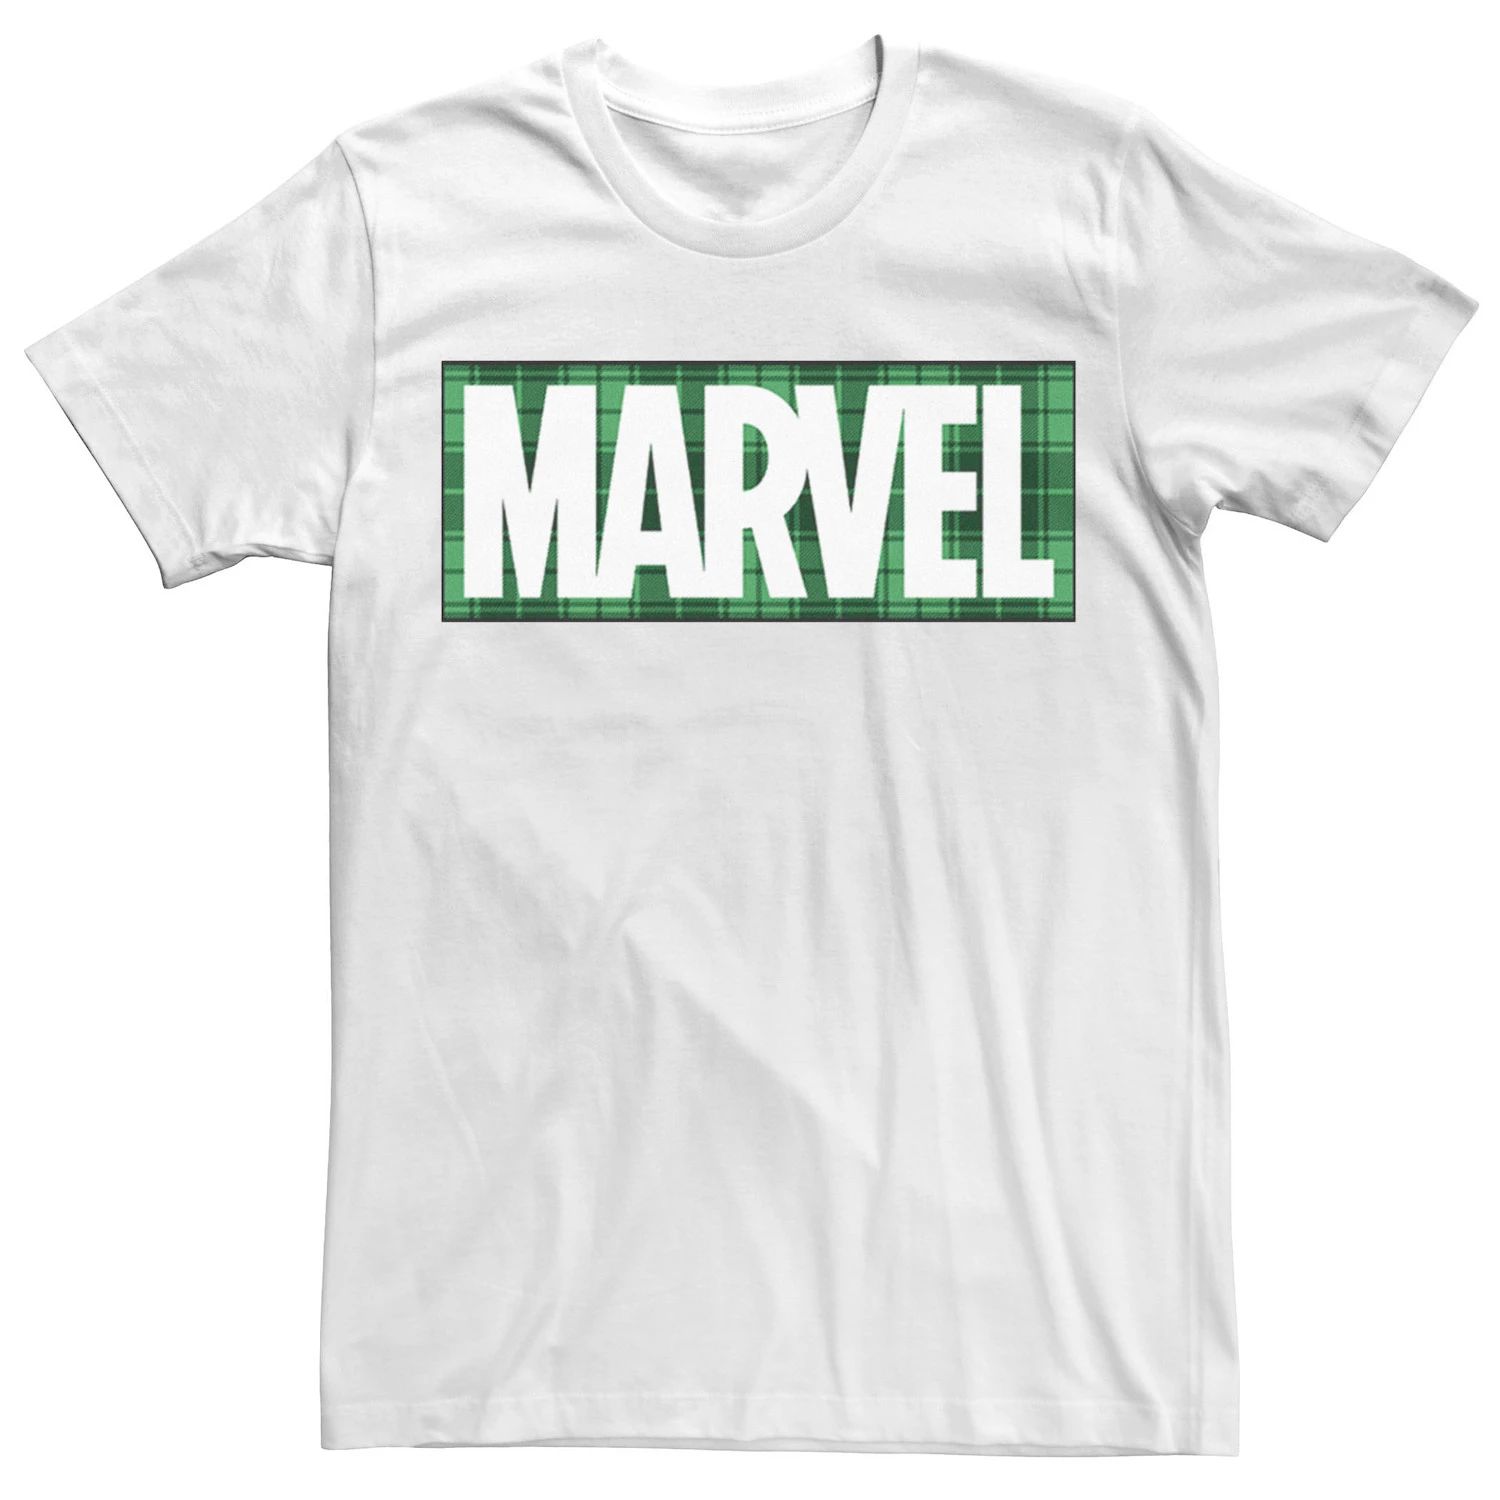 Мужская футболка с логотипом в клетку ко Дню Святого Патрика Marvel